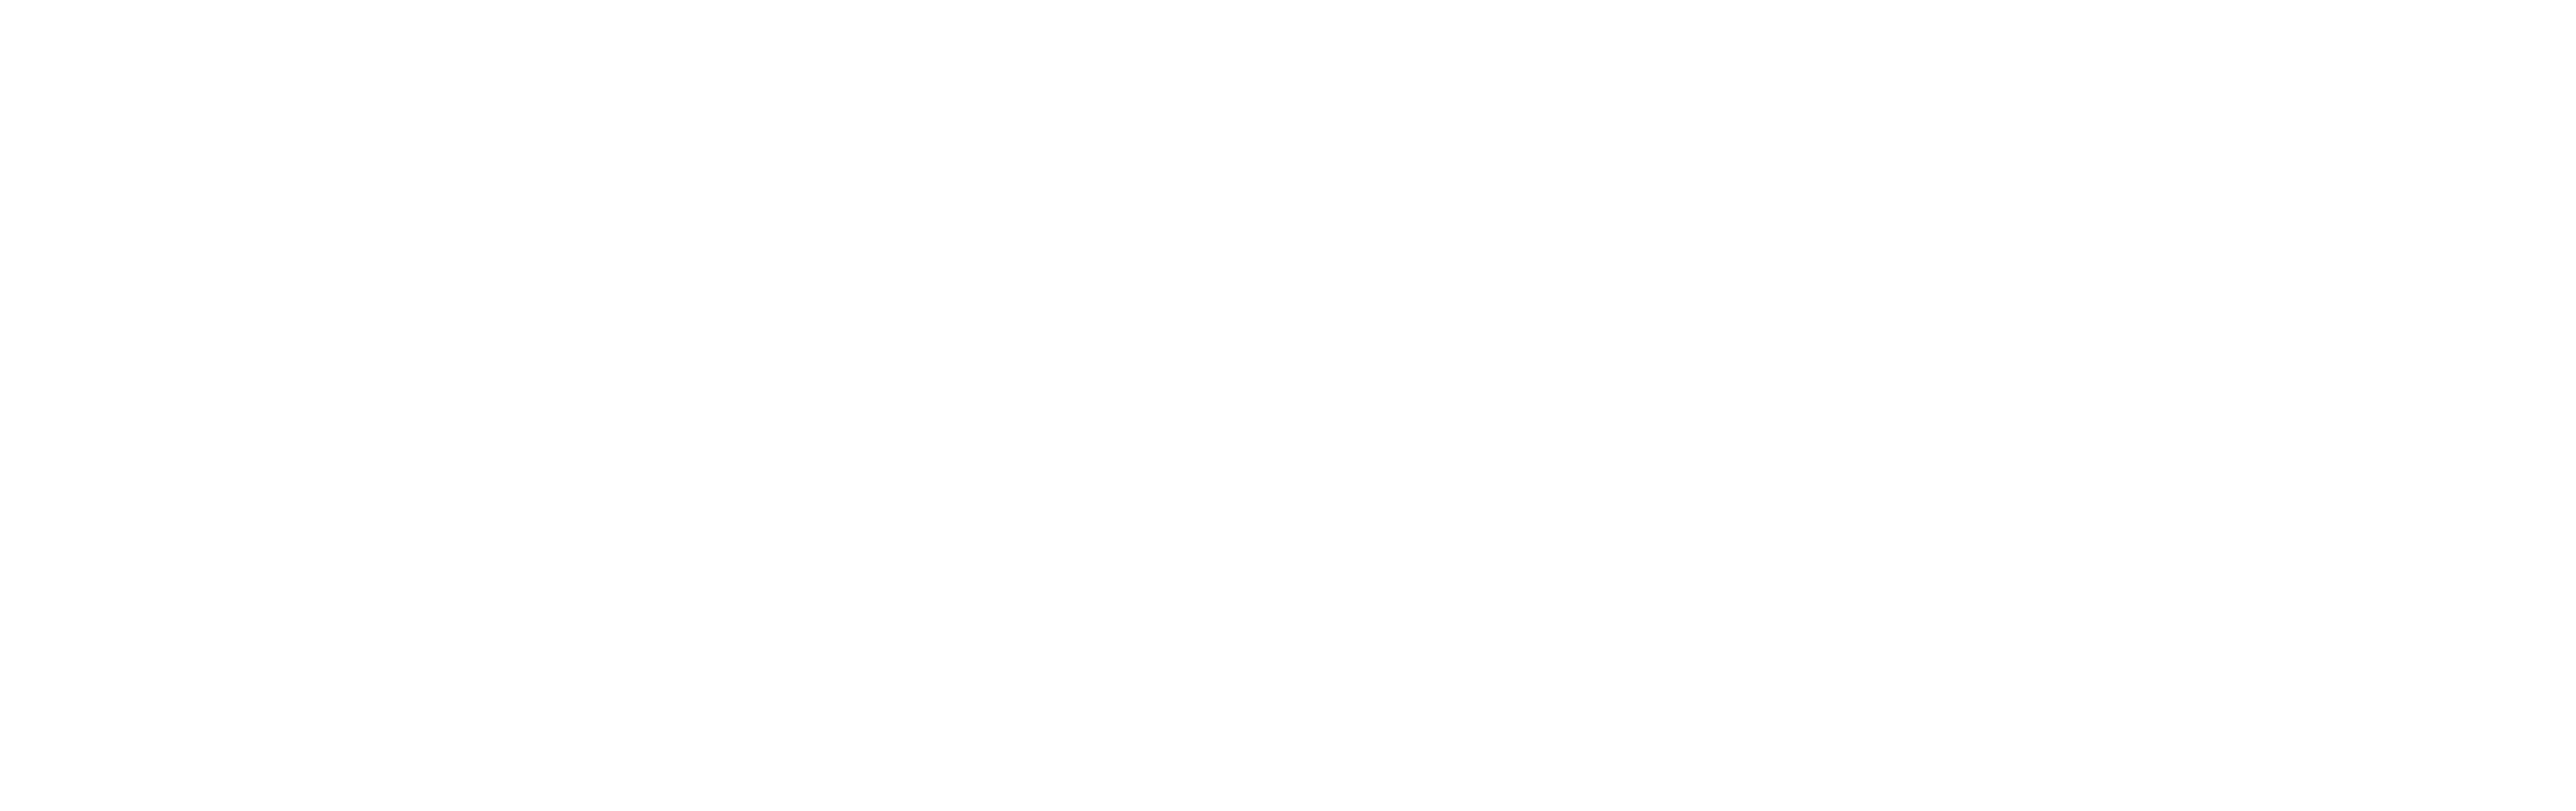 24EGYZ-DC AUS Semi-custom Logo - Chase Burris-white